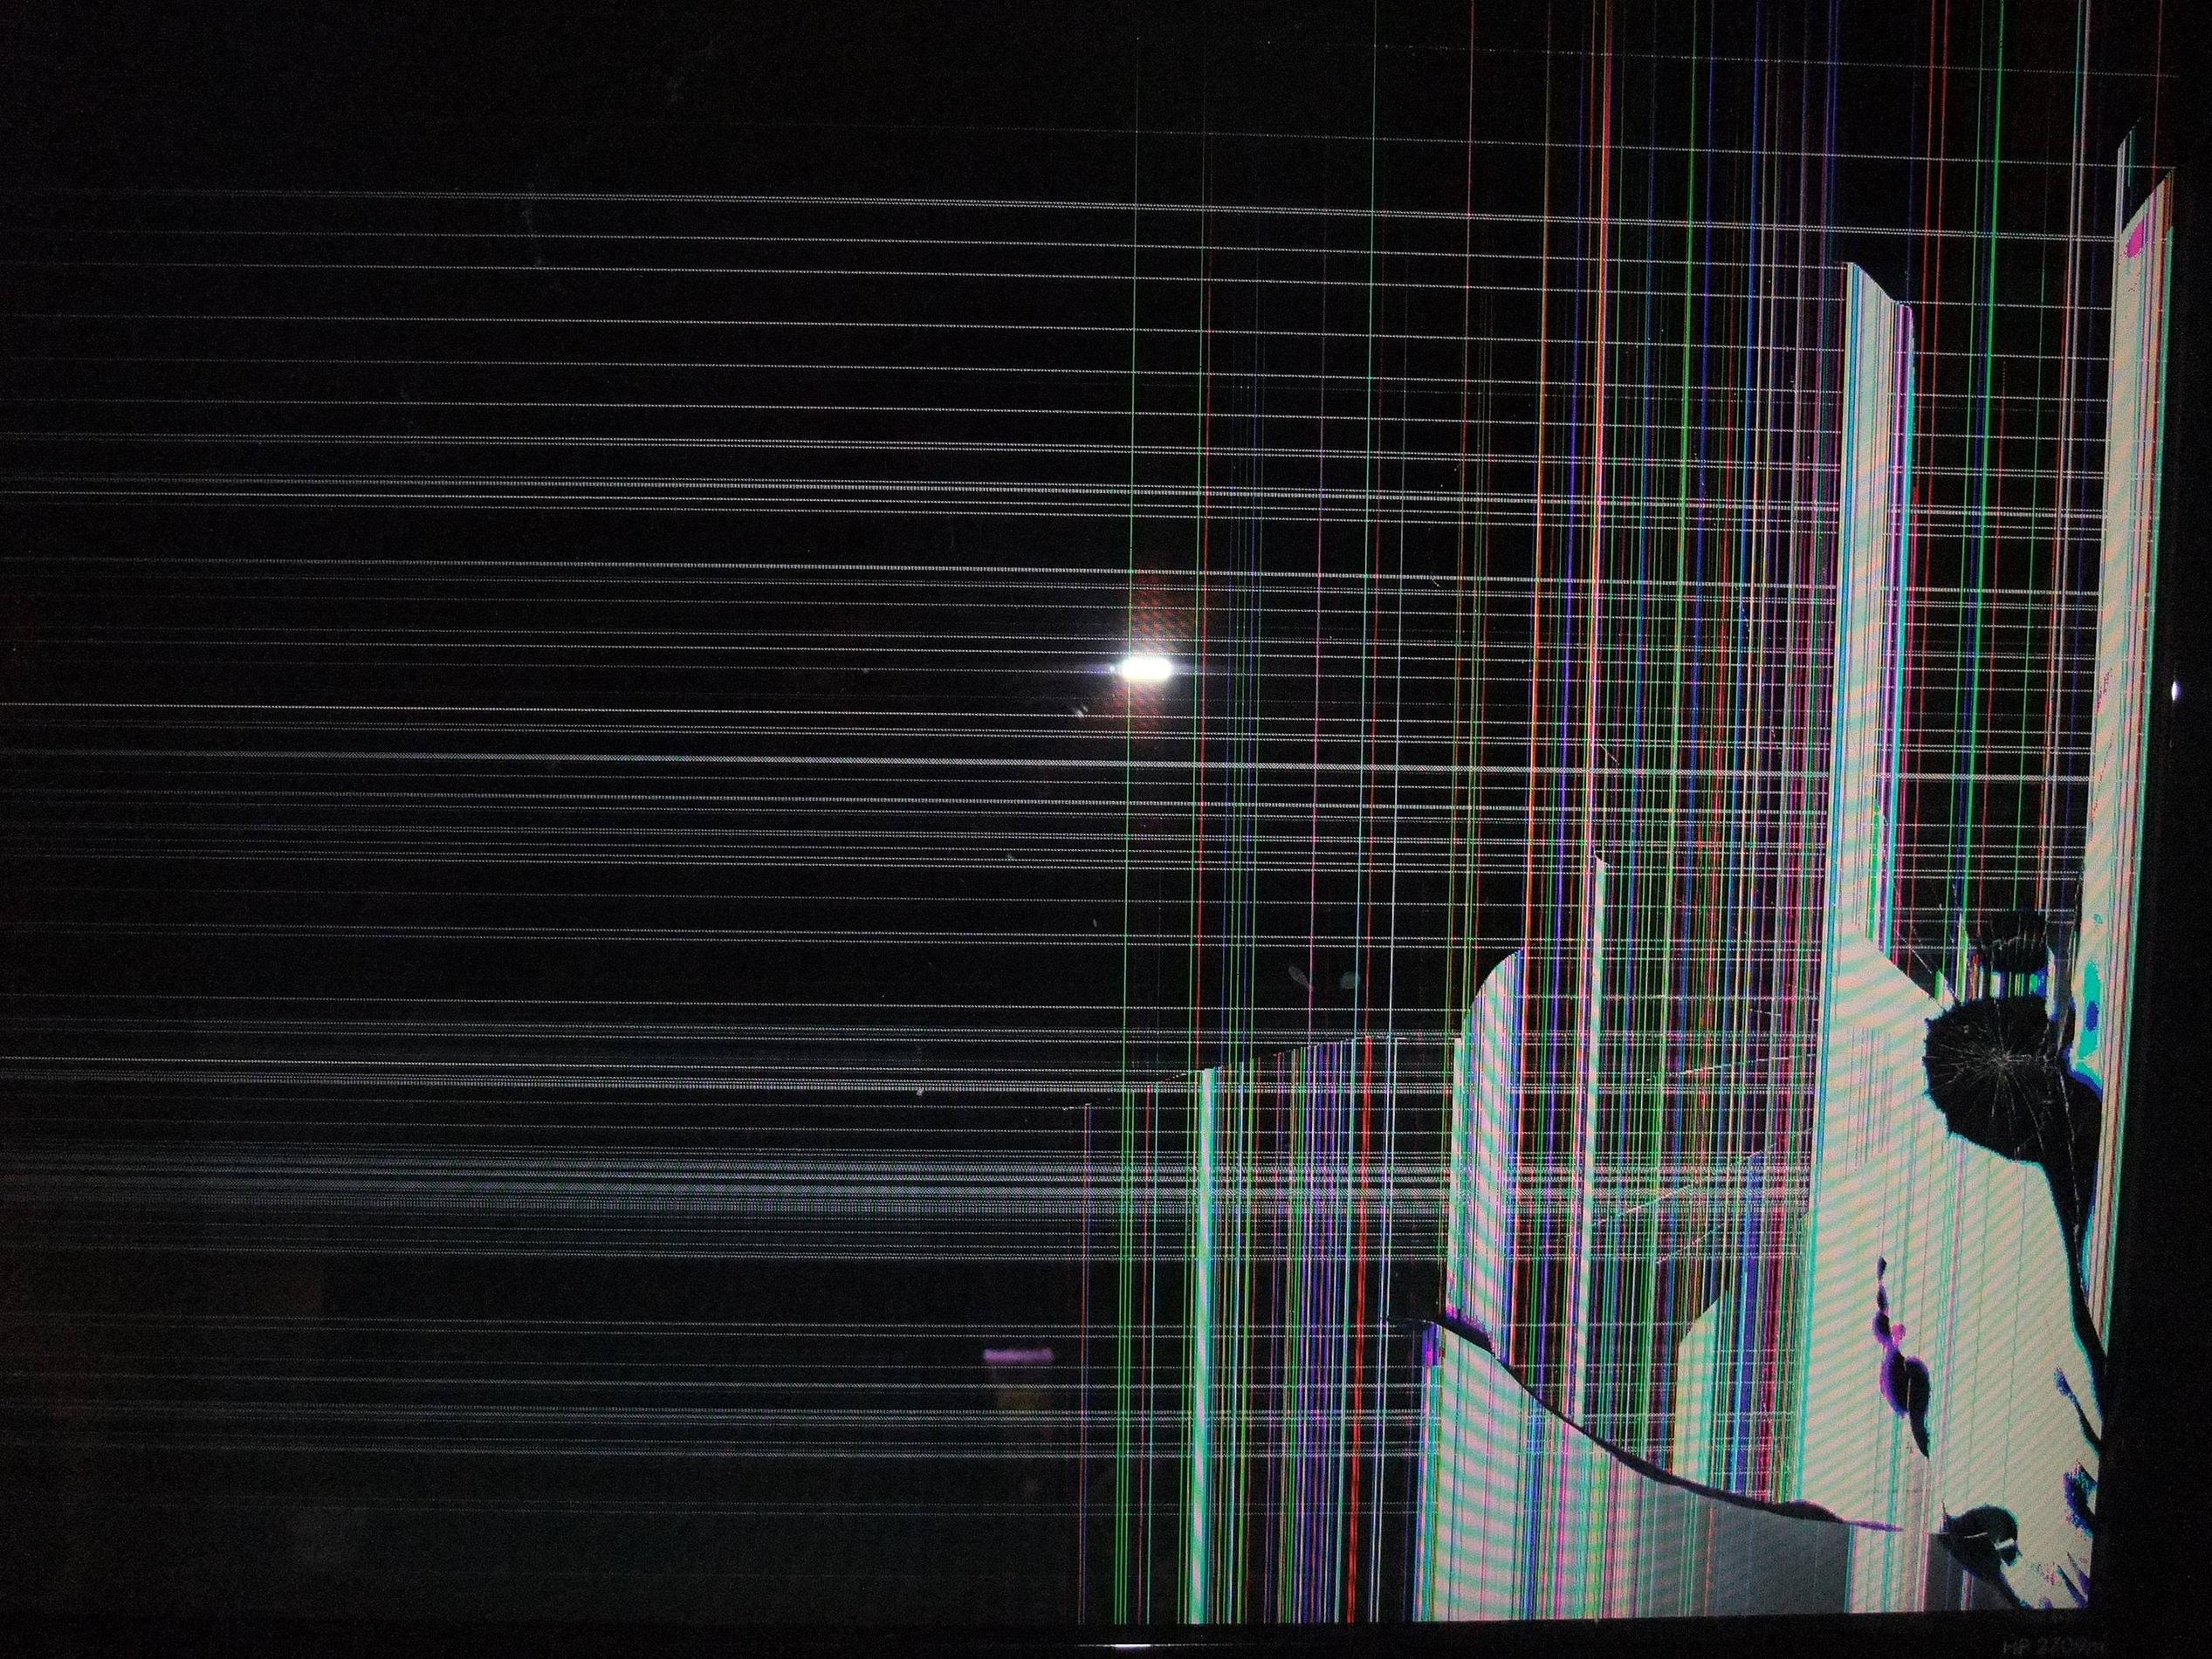 Broken TV Screen Wallpaper - WallpaperSafari